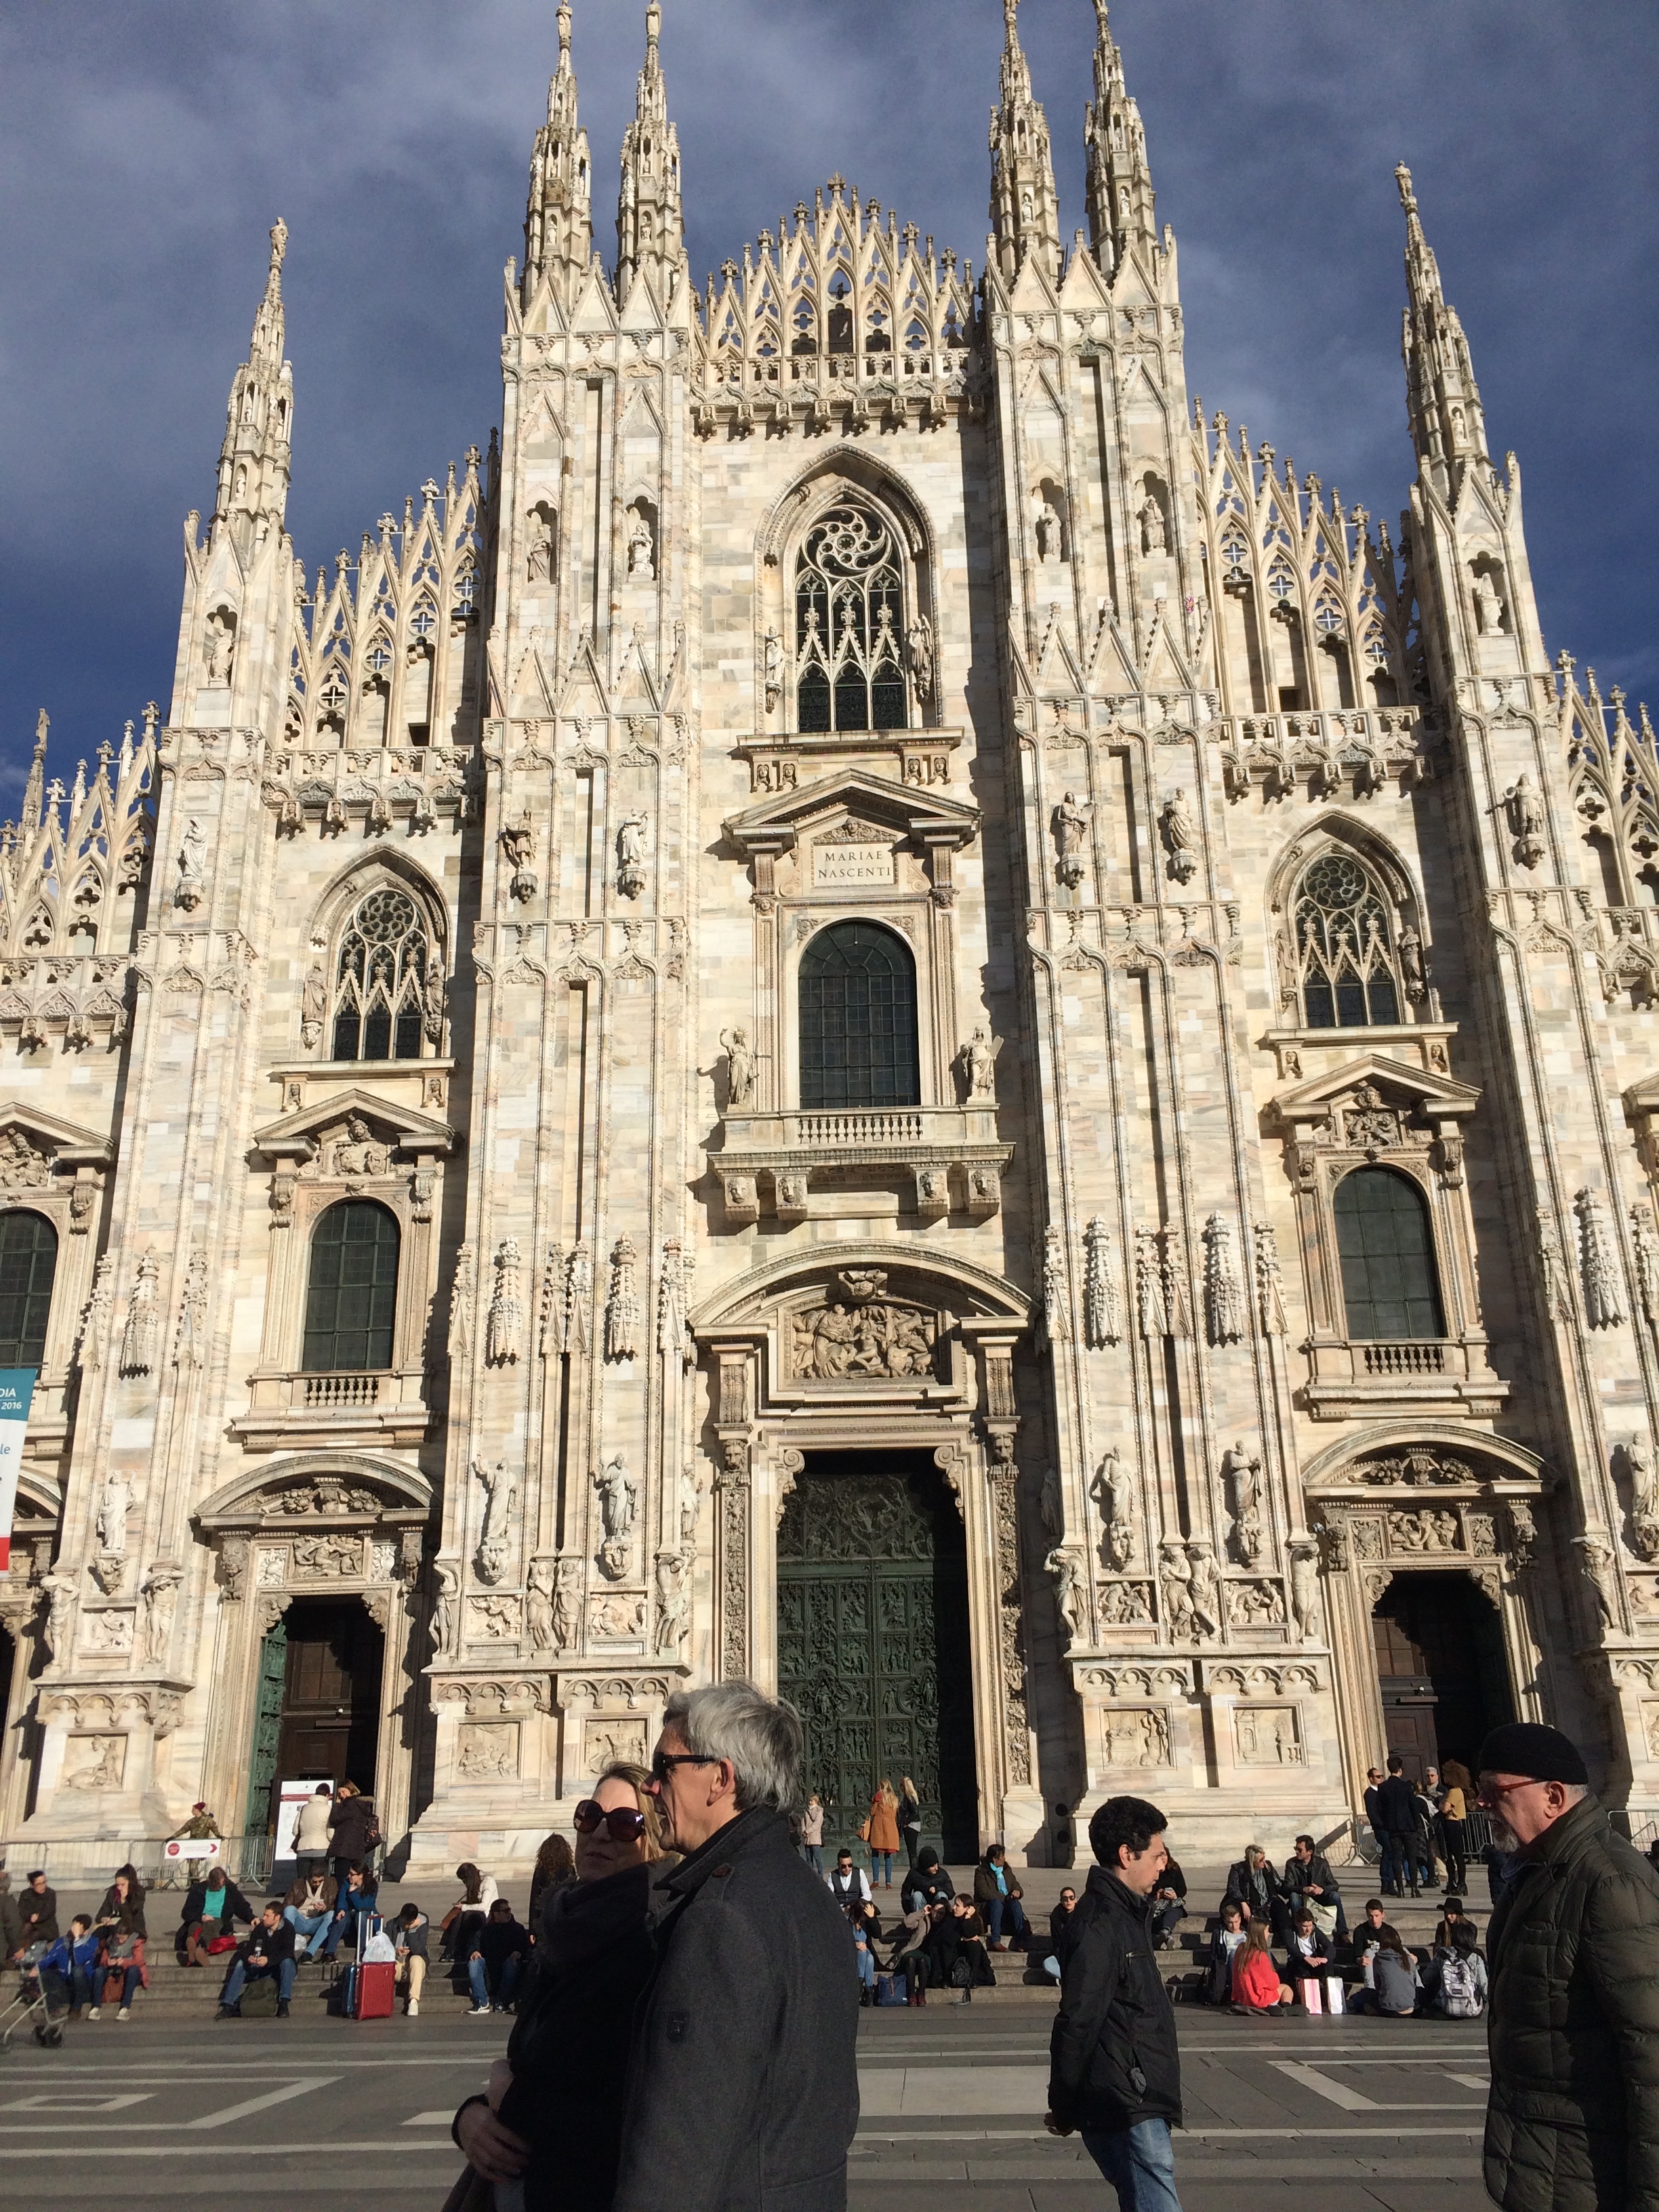 Image of the Duomo in Milan